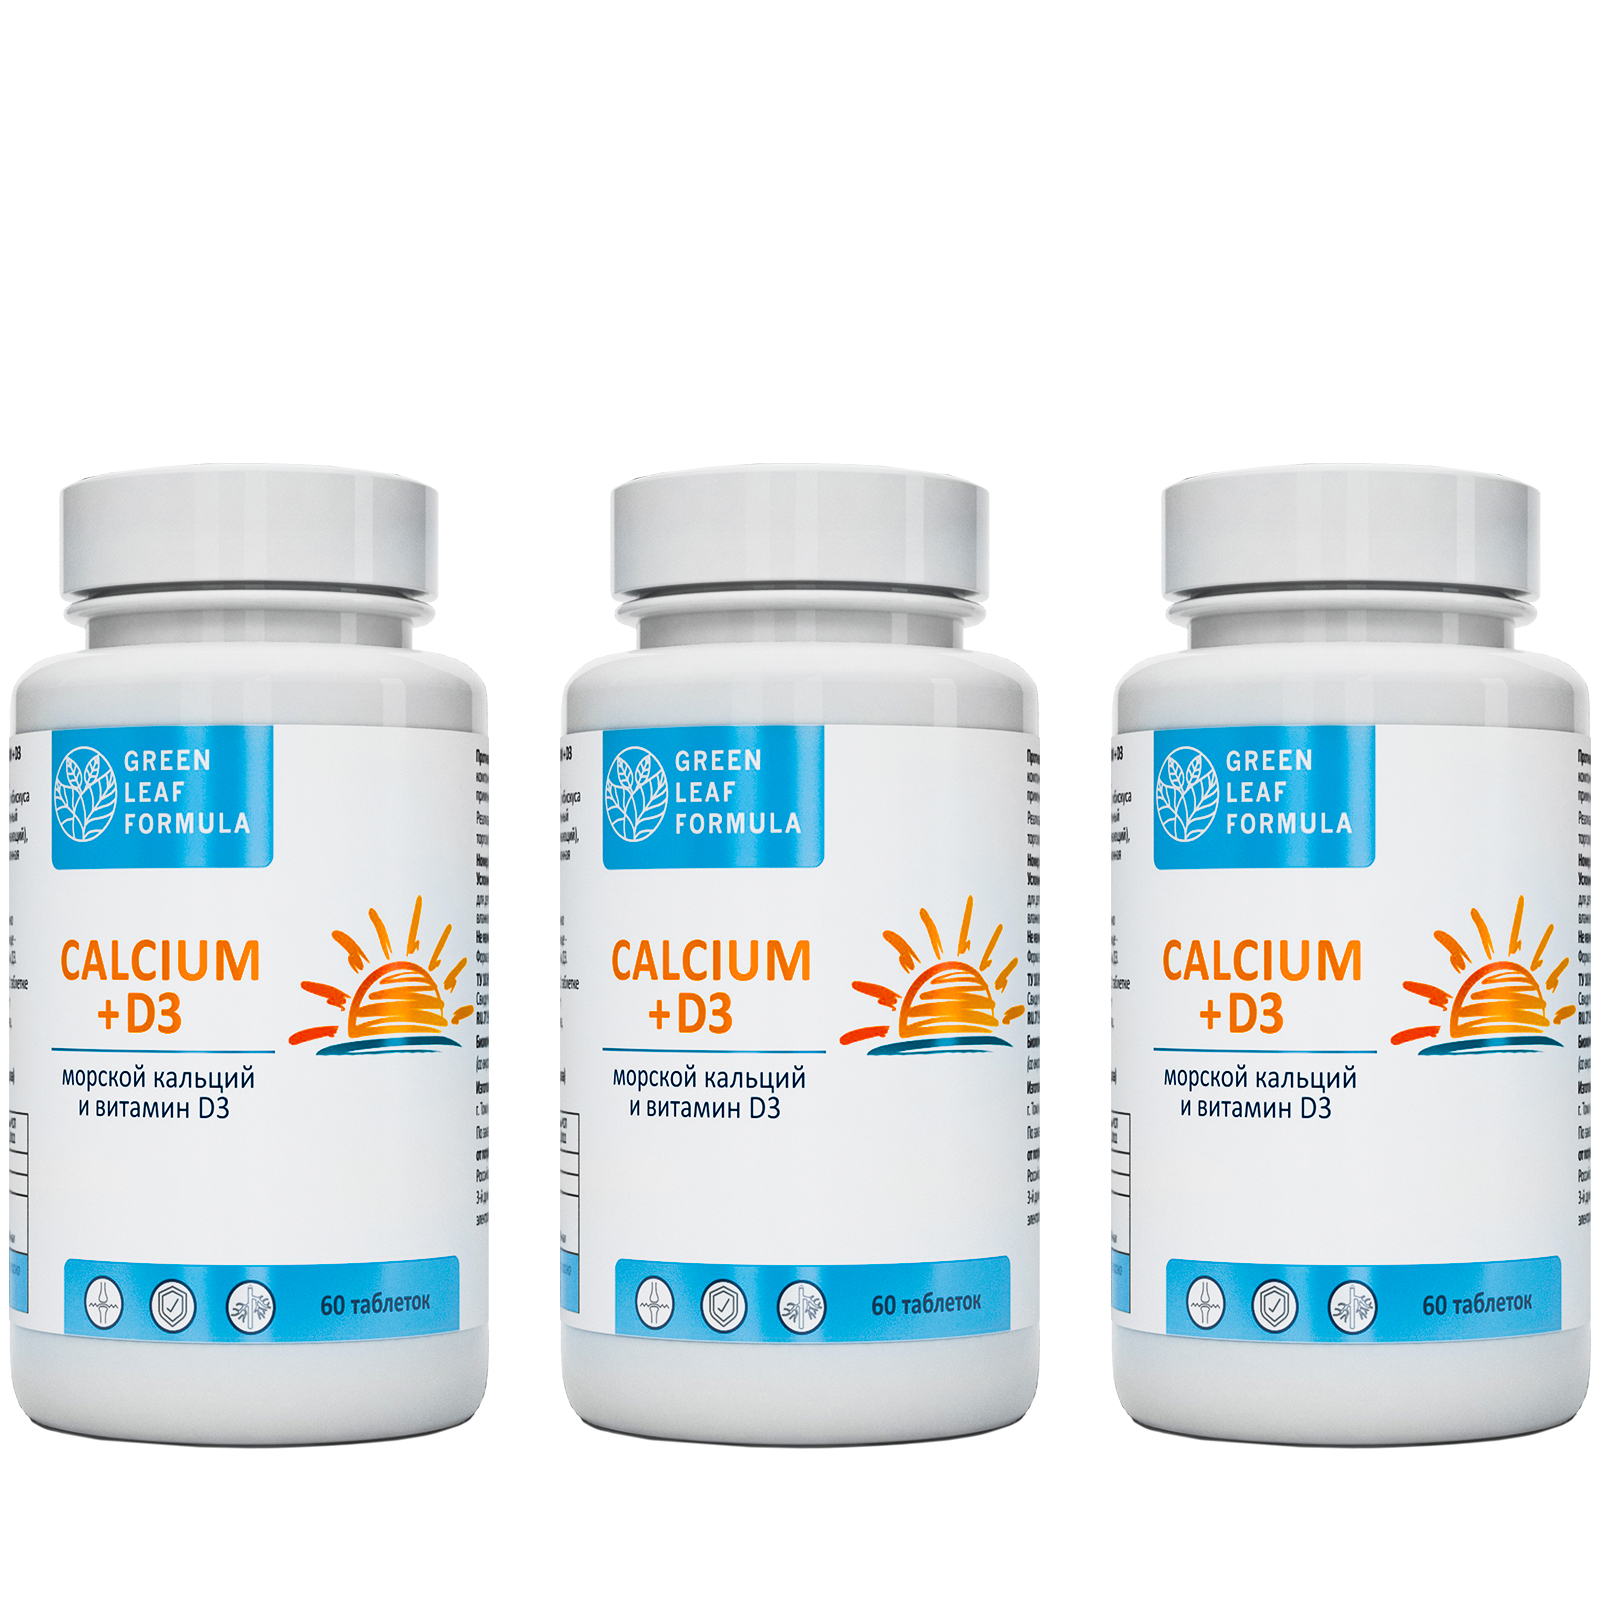 Calcium D3 Кальций Д3 Green Leaf Formula витамины для костей и суставов 3 банки по 60 таблеток - фото 1